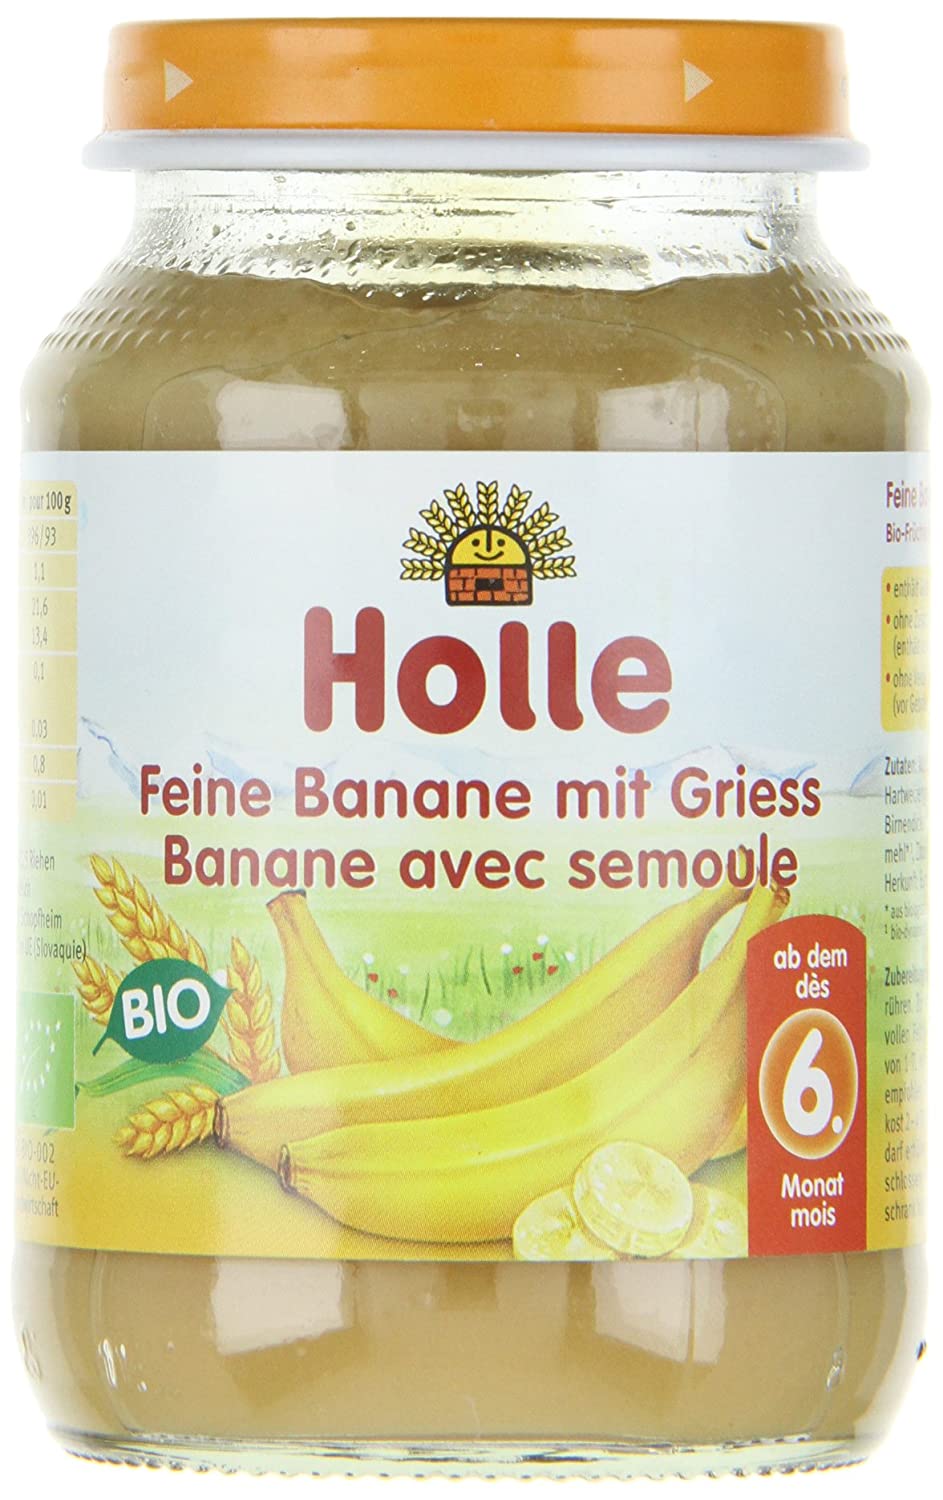 Holle Feine Banane mit Griess, 6er Pack (6 x 190 g) - Bio